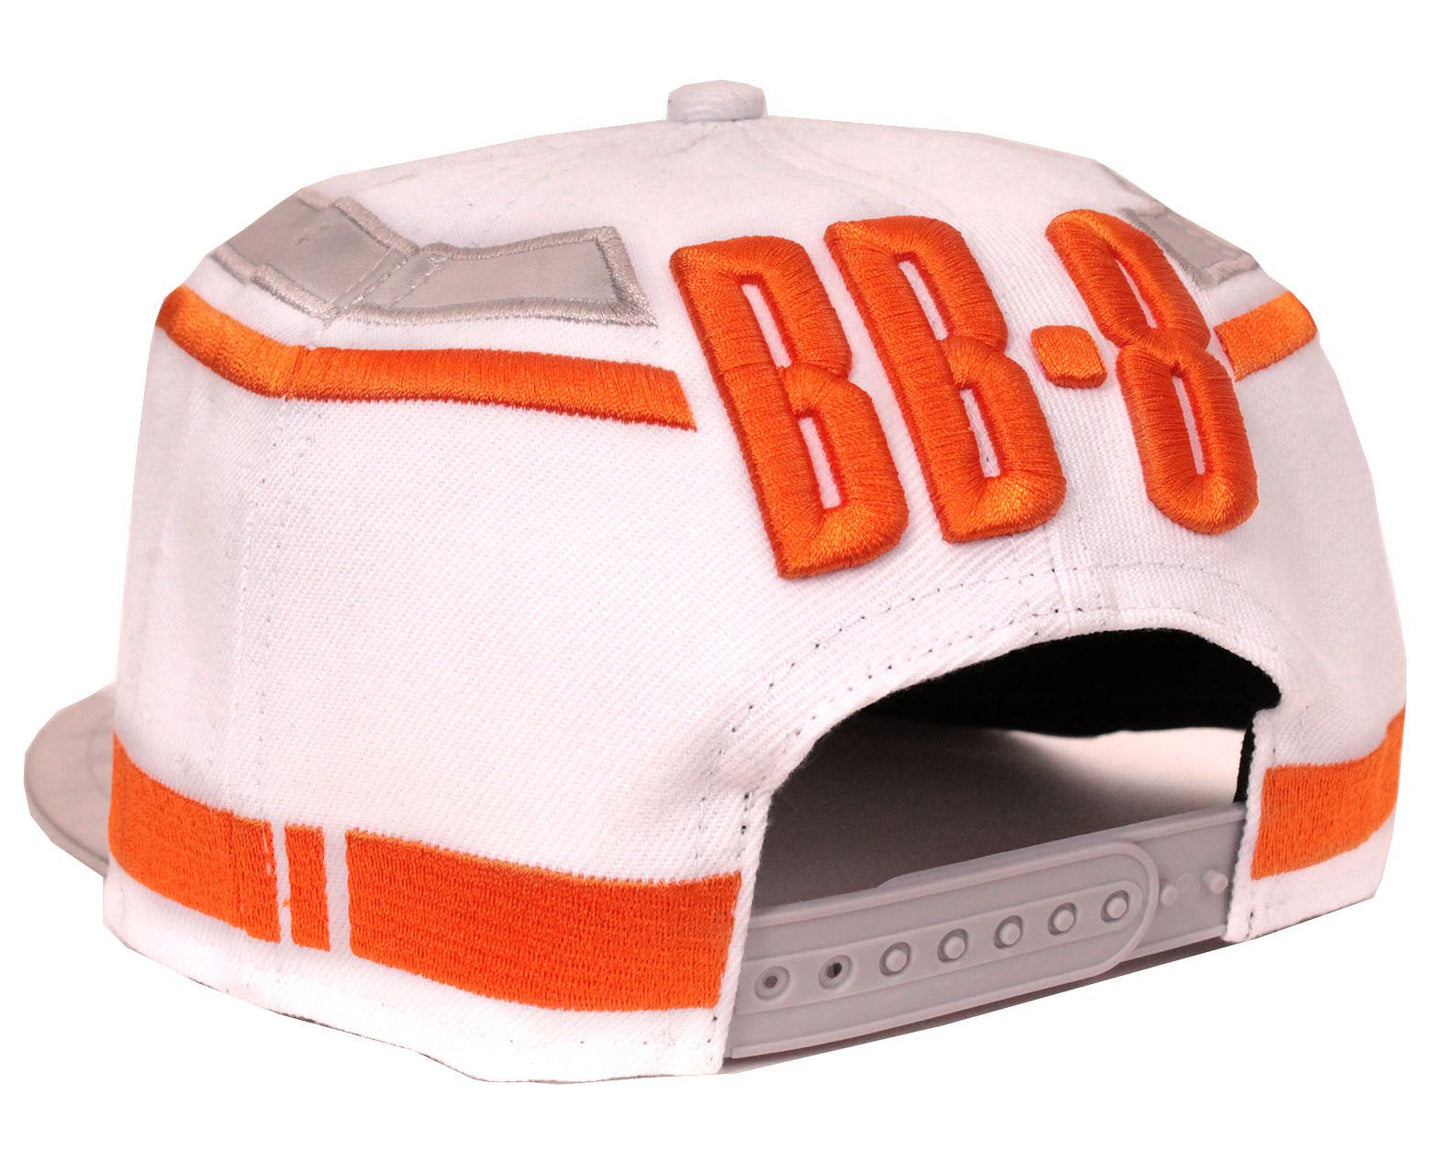 Star Wars VII Cap - BB-8 Droid